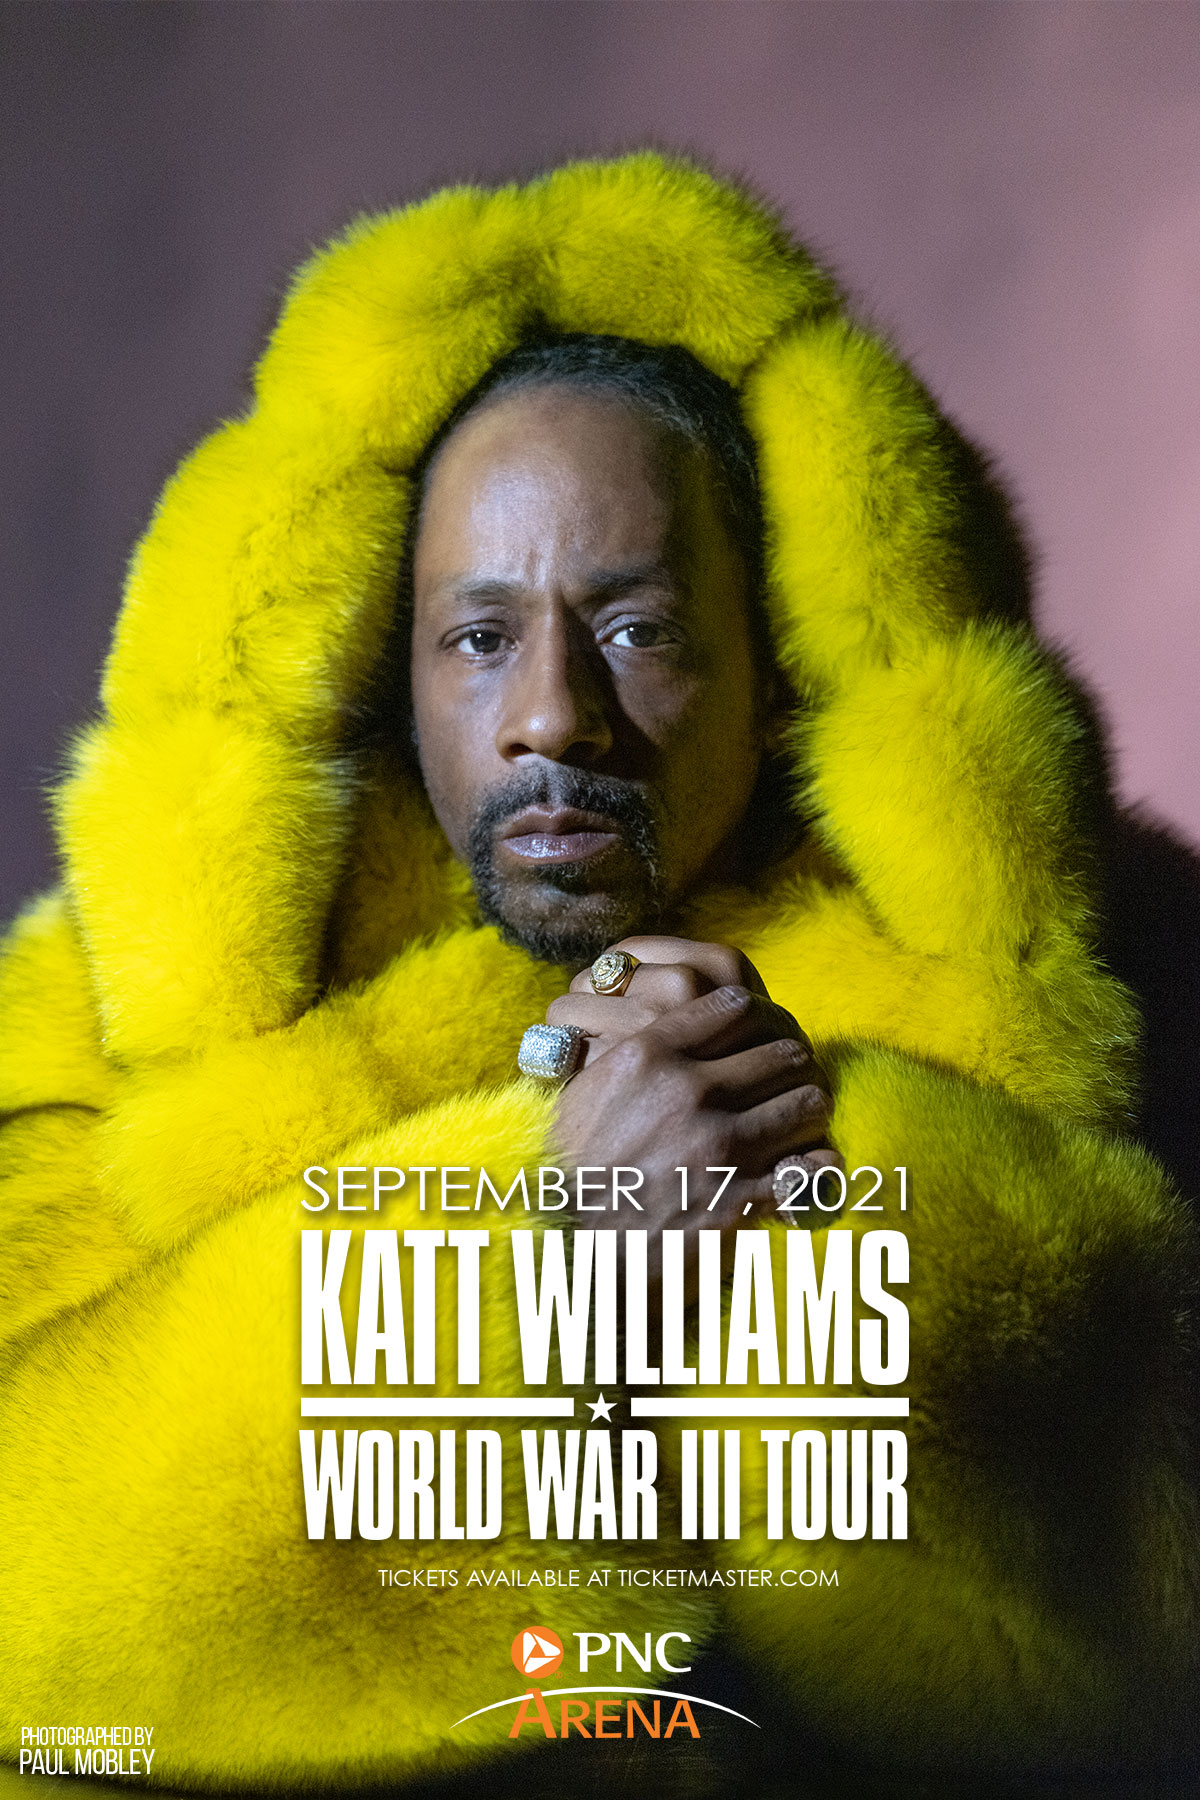 katt williams tour dates